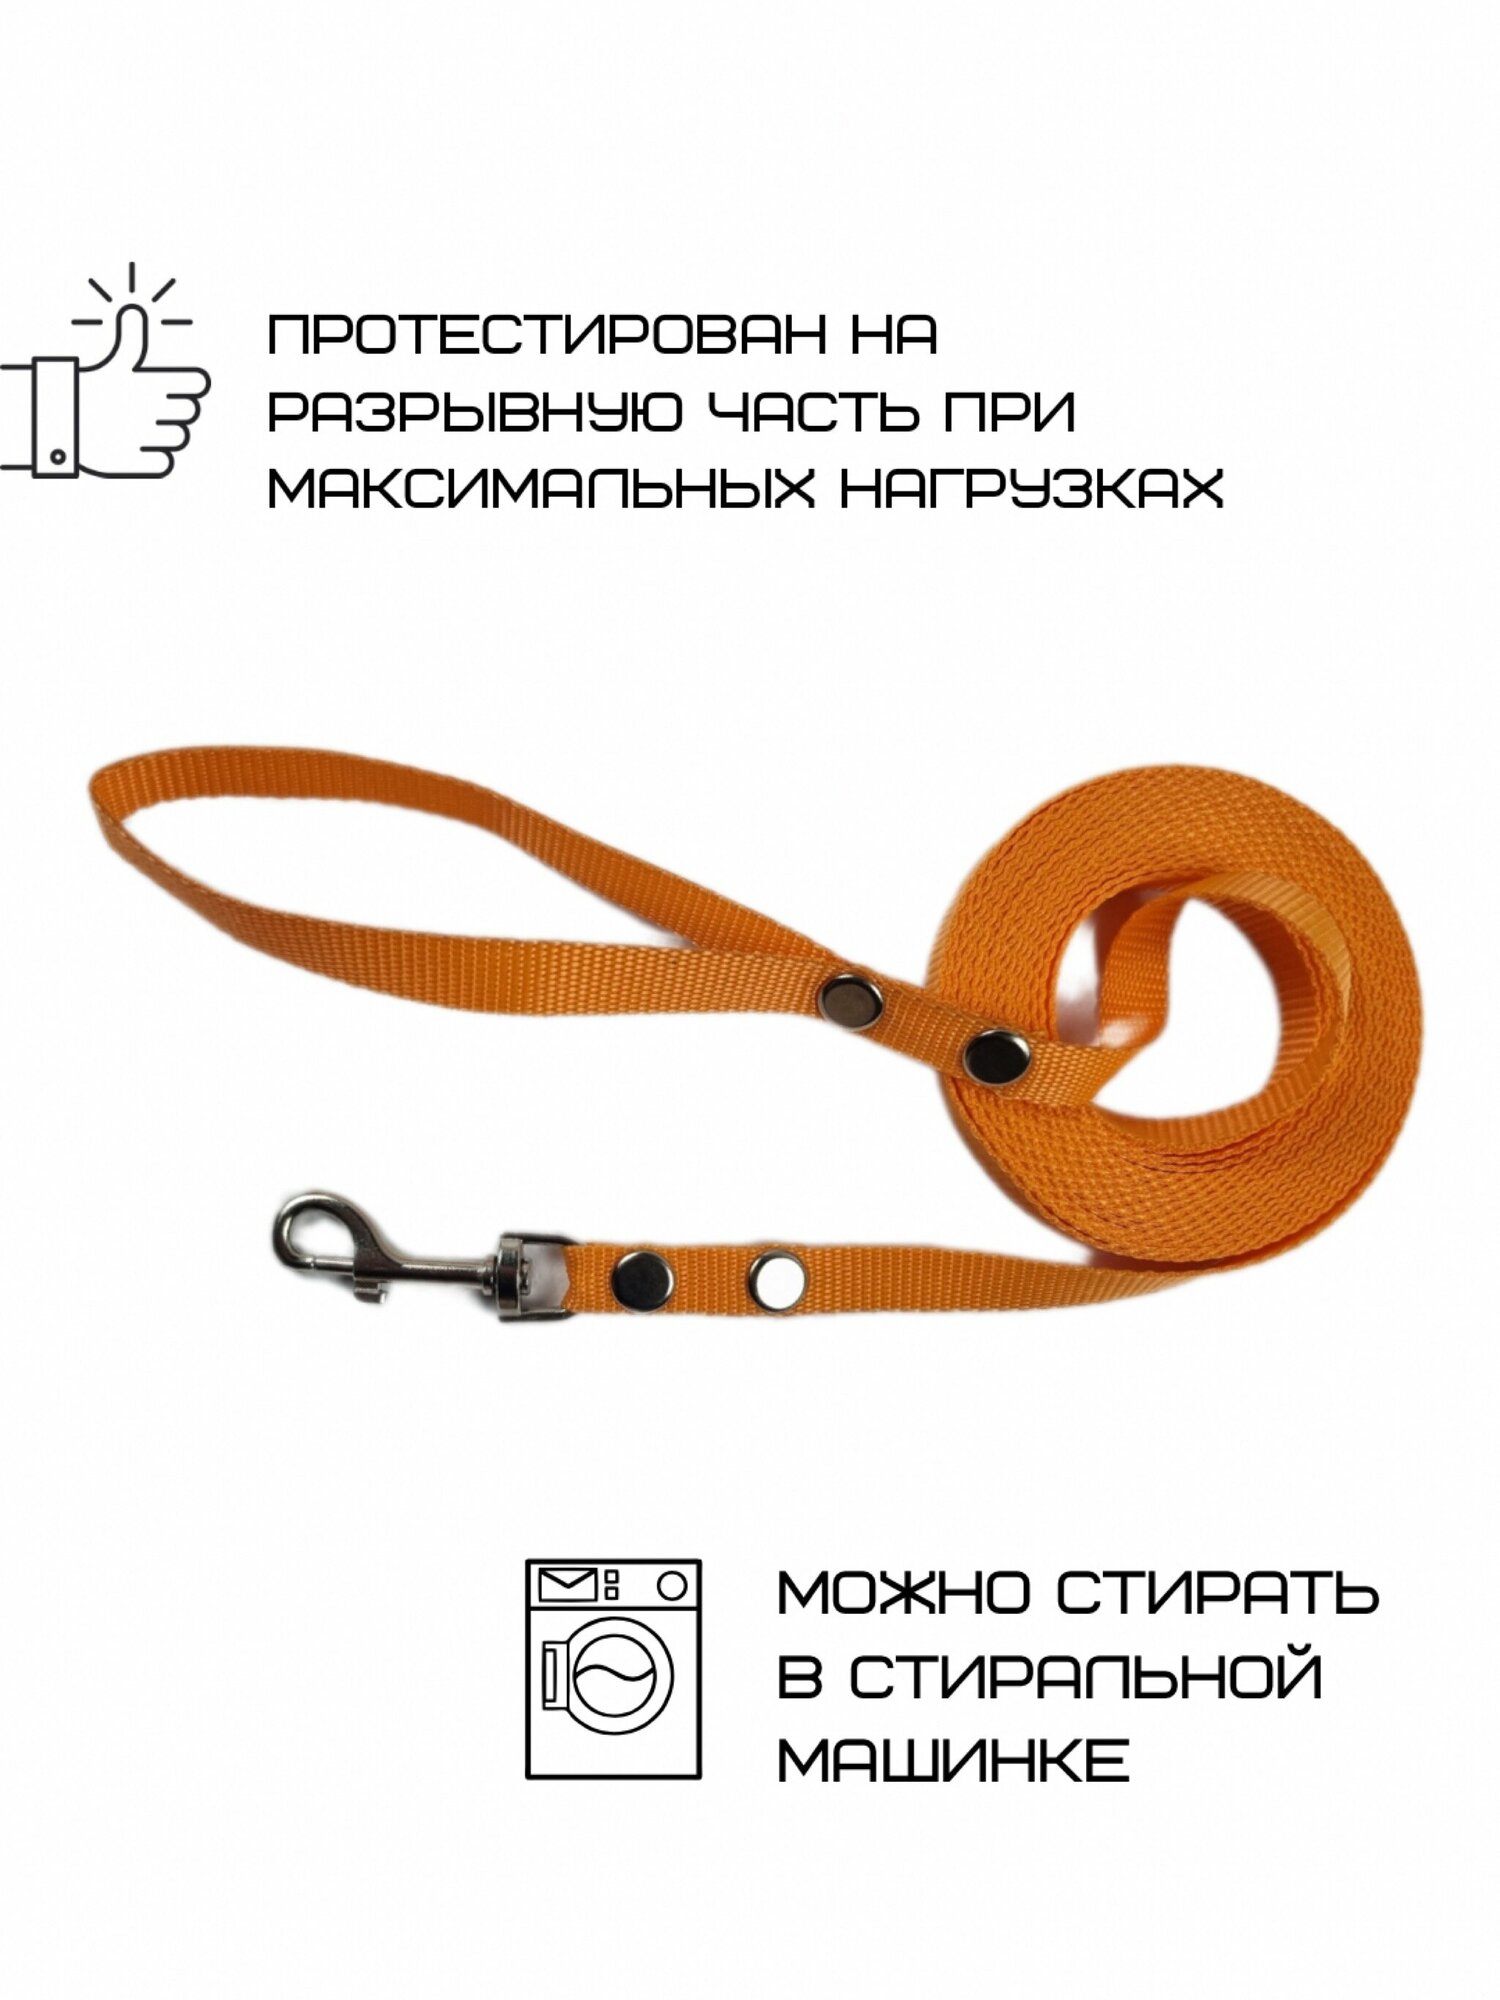 Поводок Хвостатыч для собак нейлоновый классический 5 м х 15 мм (Оранжевый)